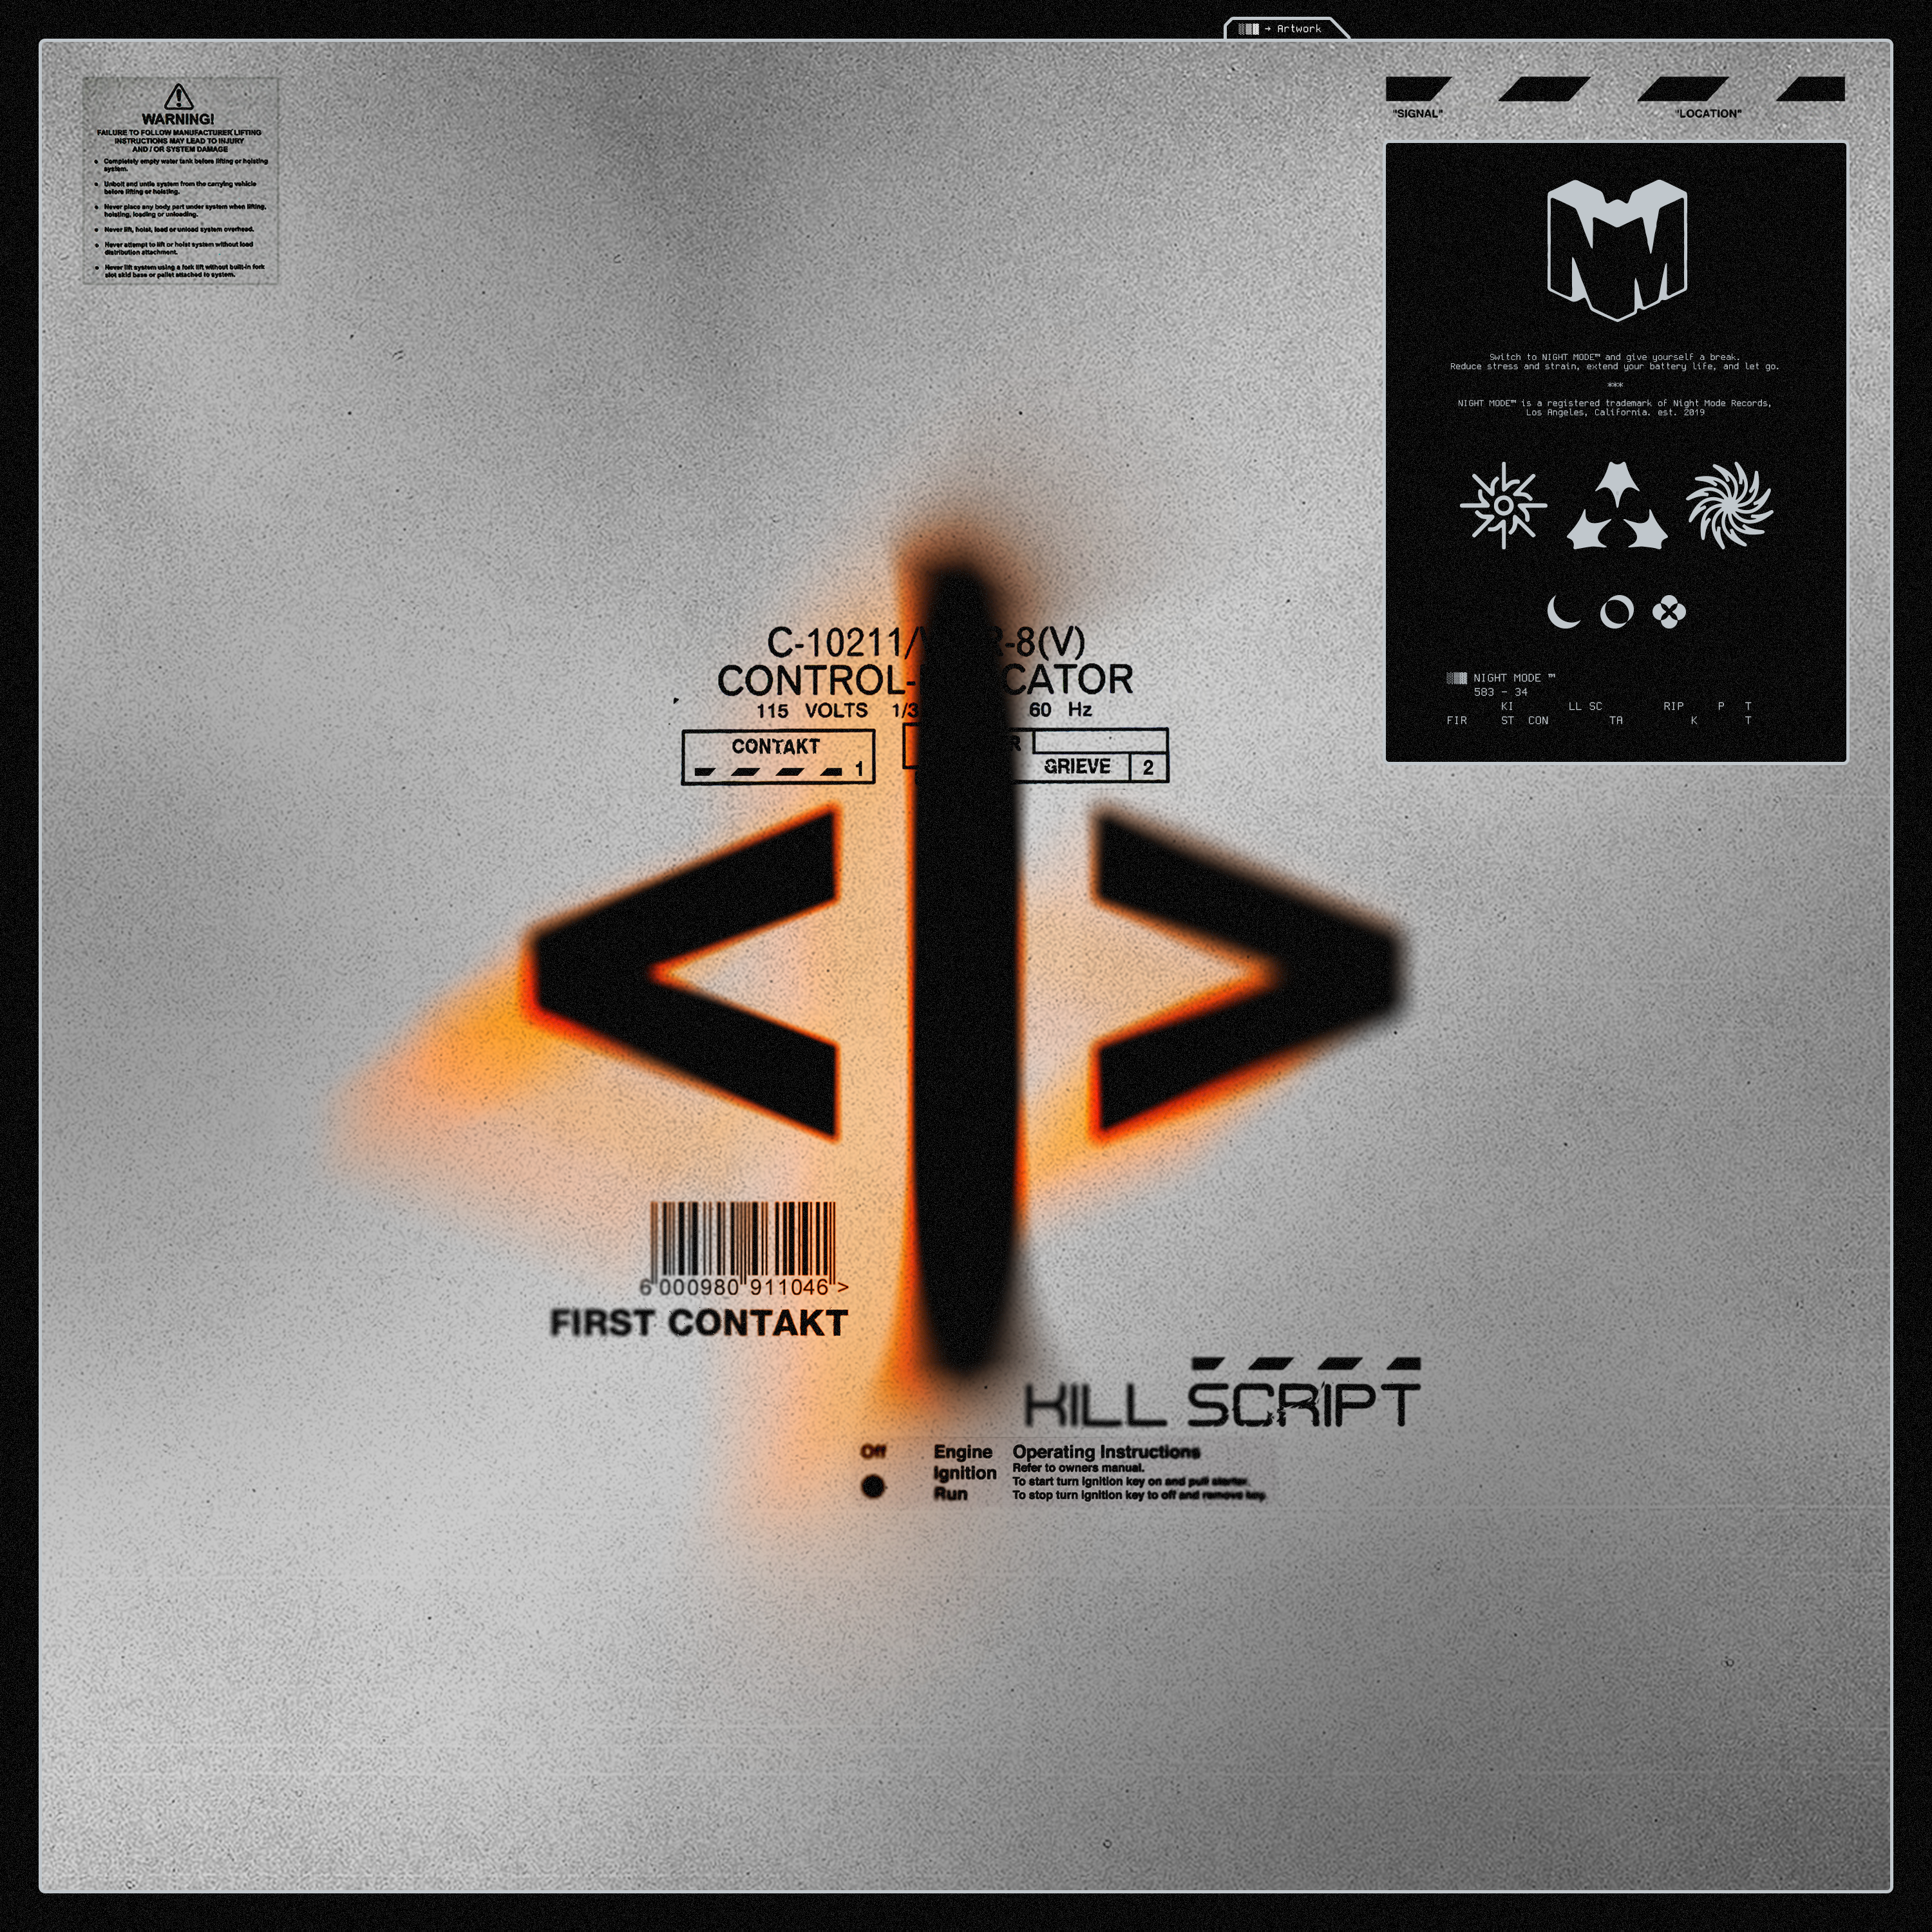 KILL SCRIPT Presents Debut EP ‘FIRST CONTAKT’